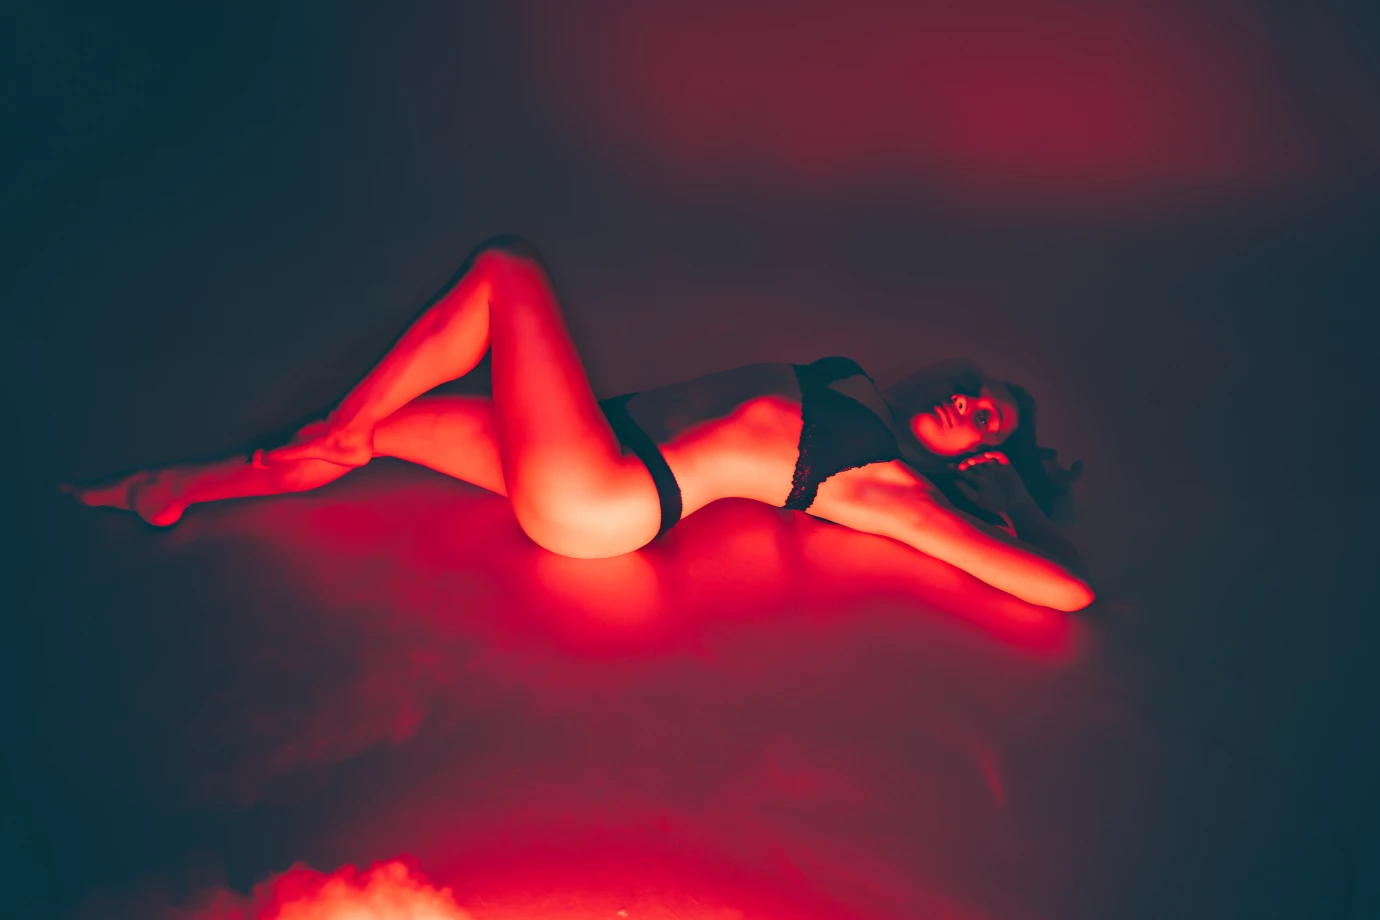 fotograf bialystok foto-pocisk-mlazowski portfolio sesja kobieca sensualna boudair sexy